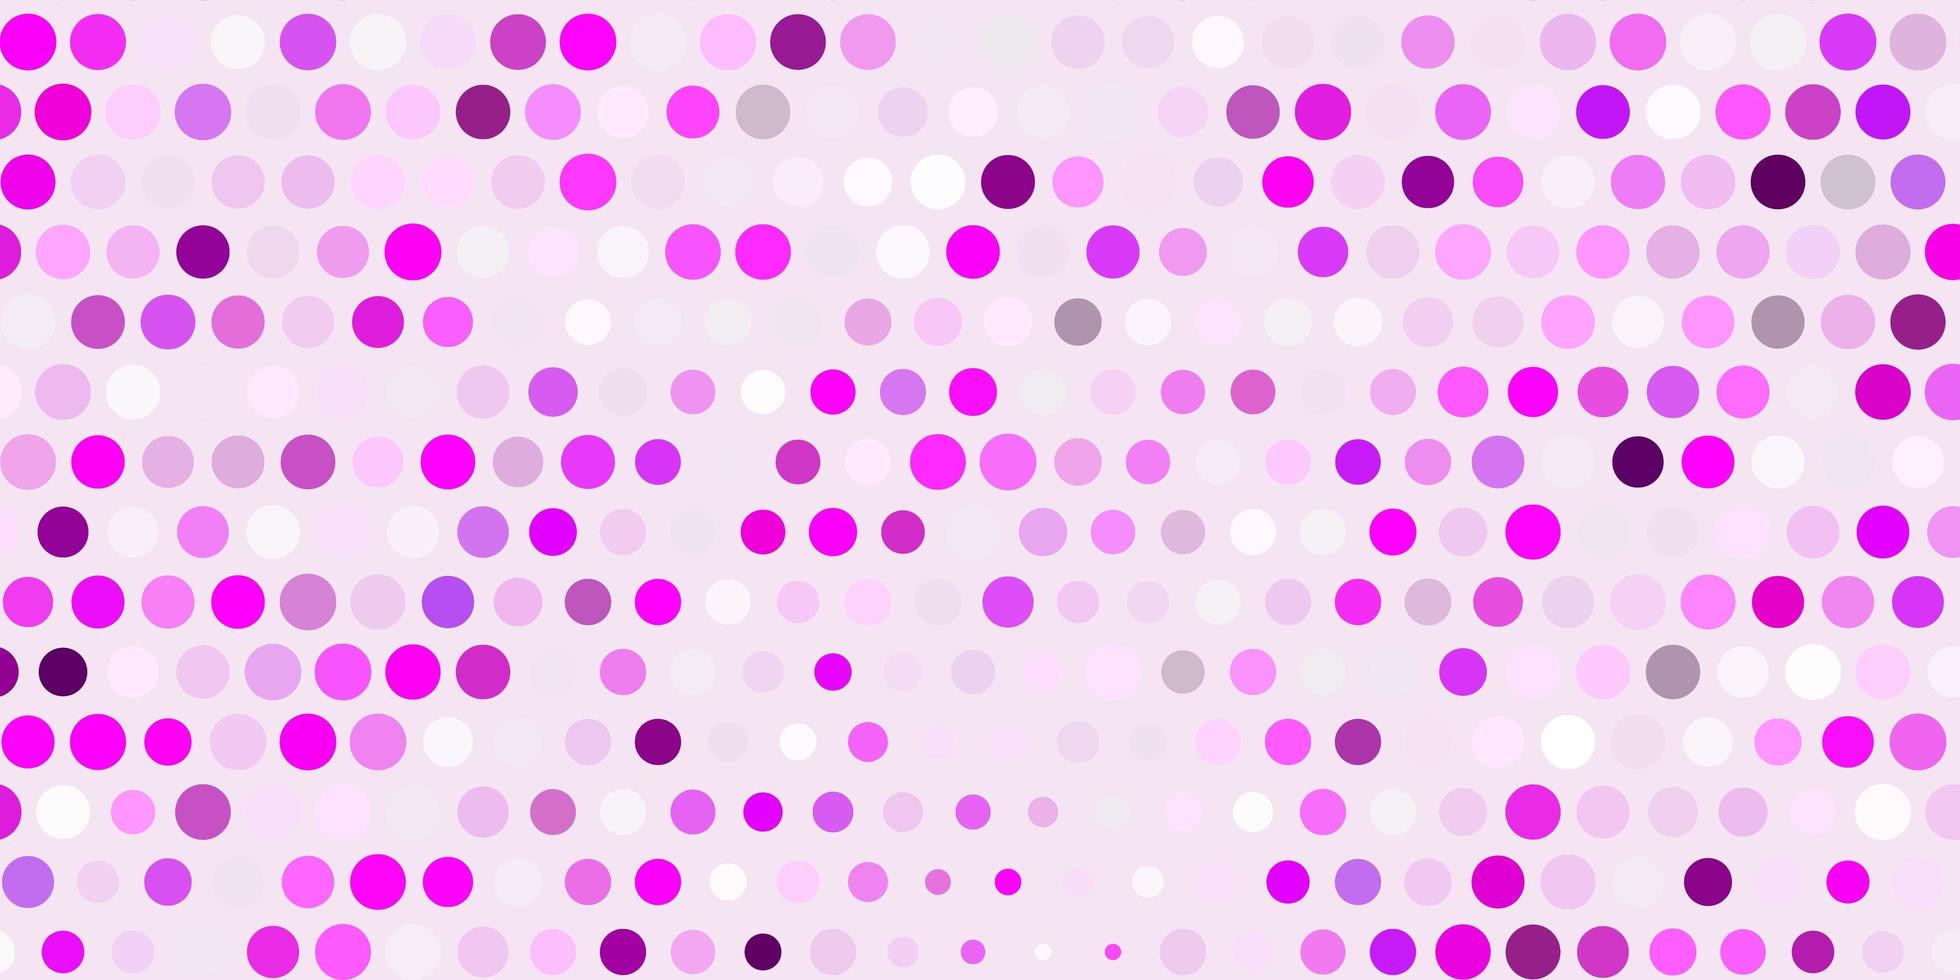 pano de fundo vector roxo, rosa claro com pontos.